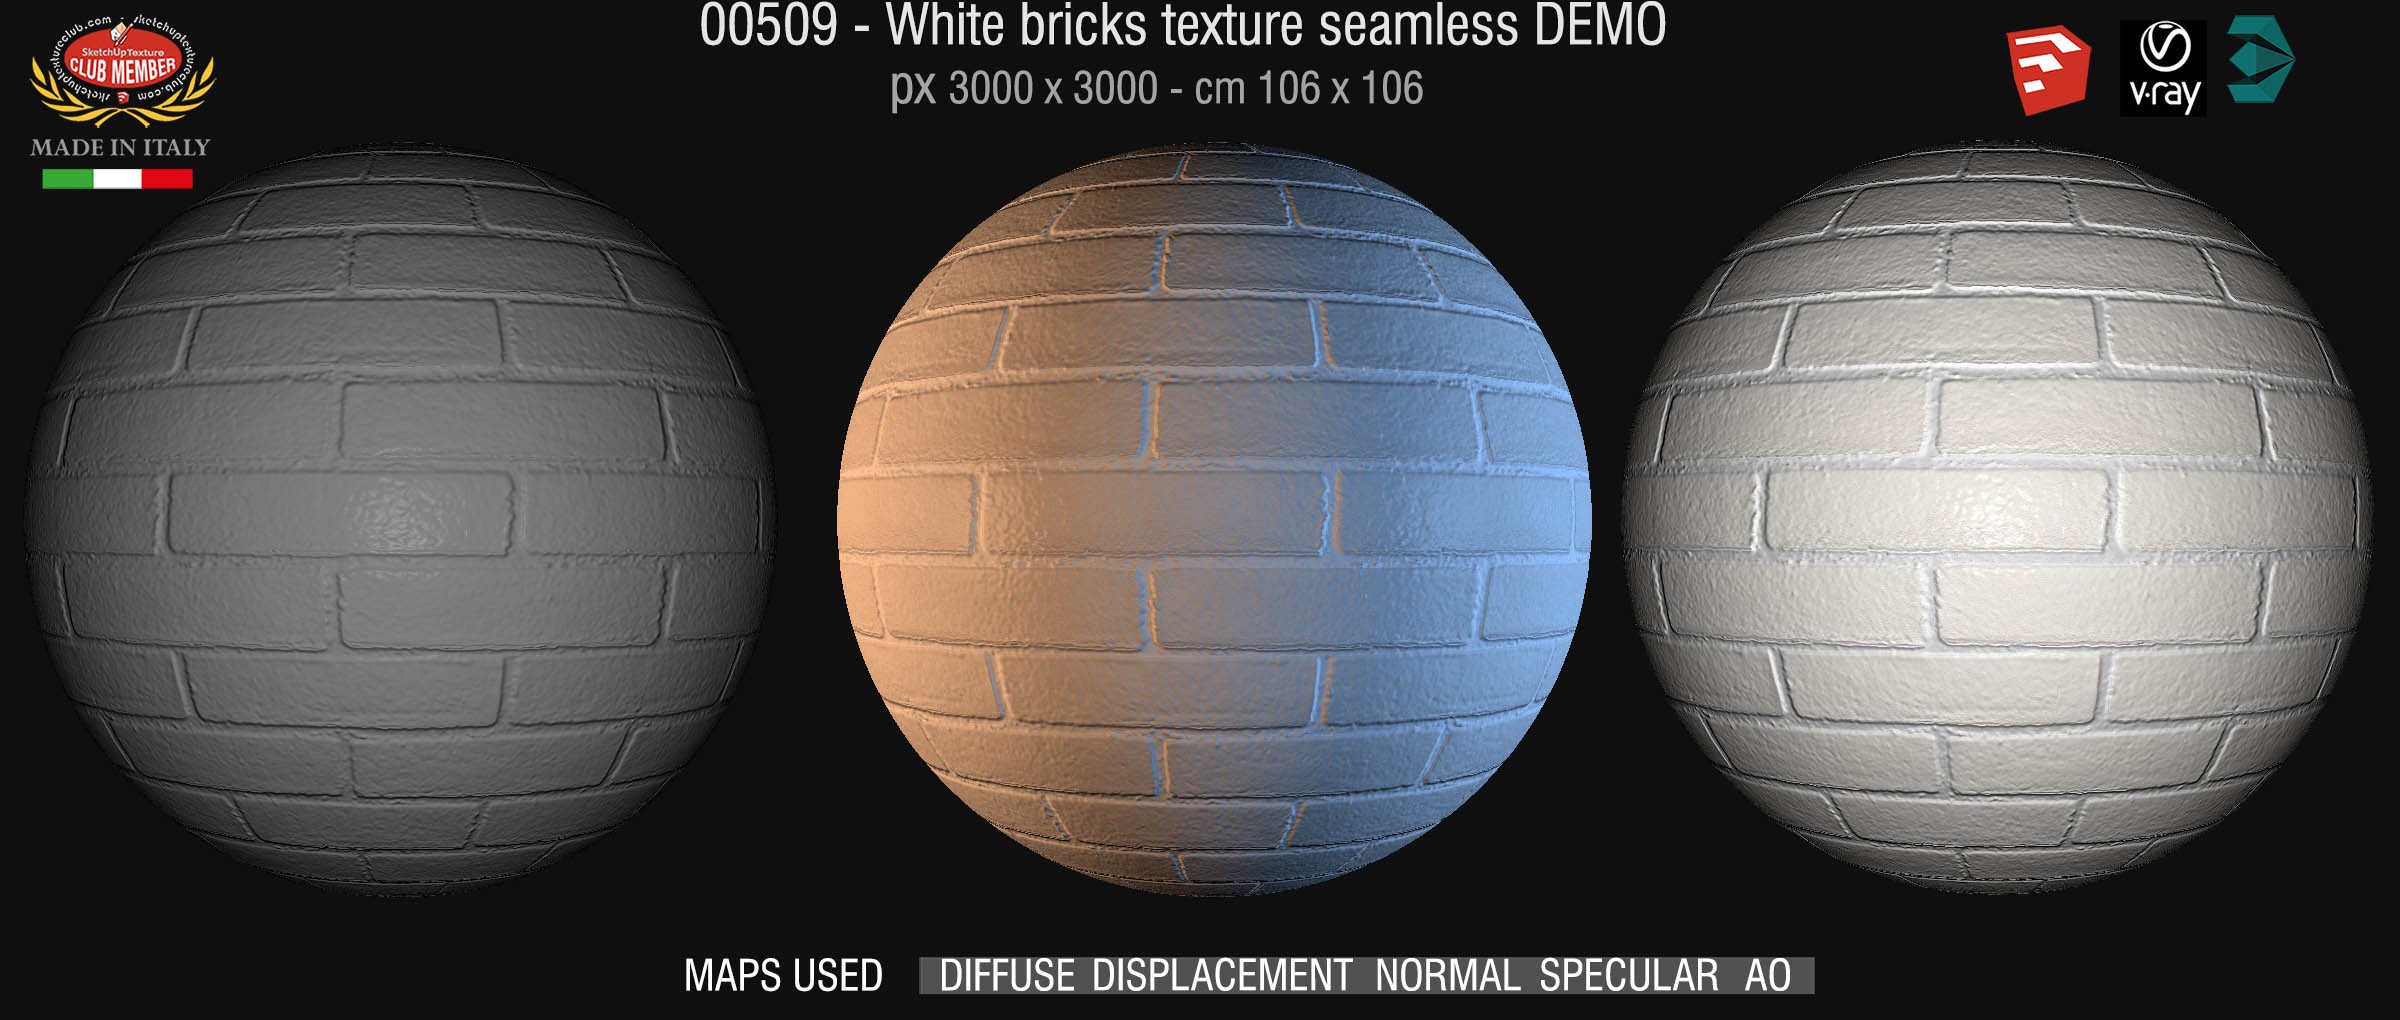 00509 White bricks texture seamless + maps DEMO